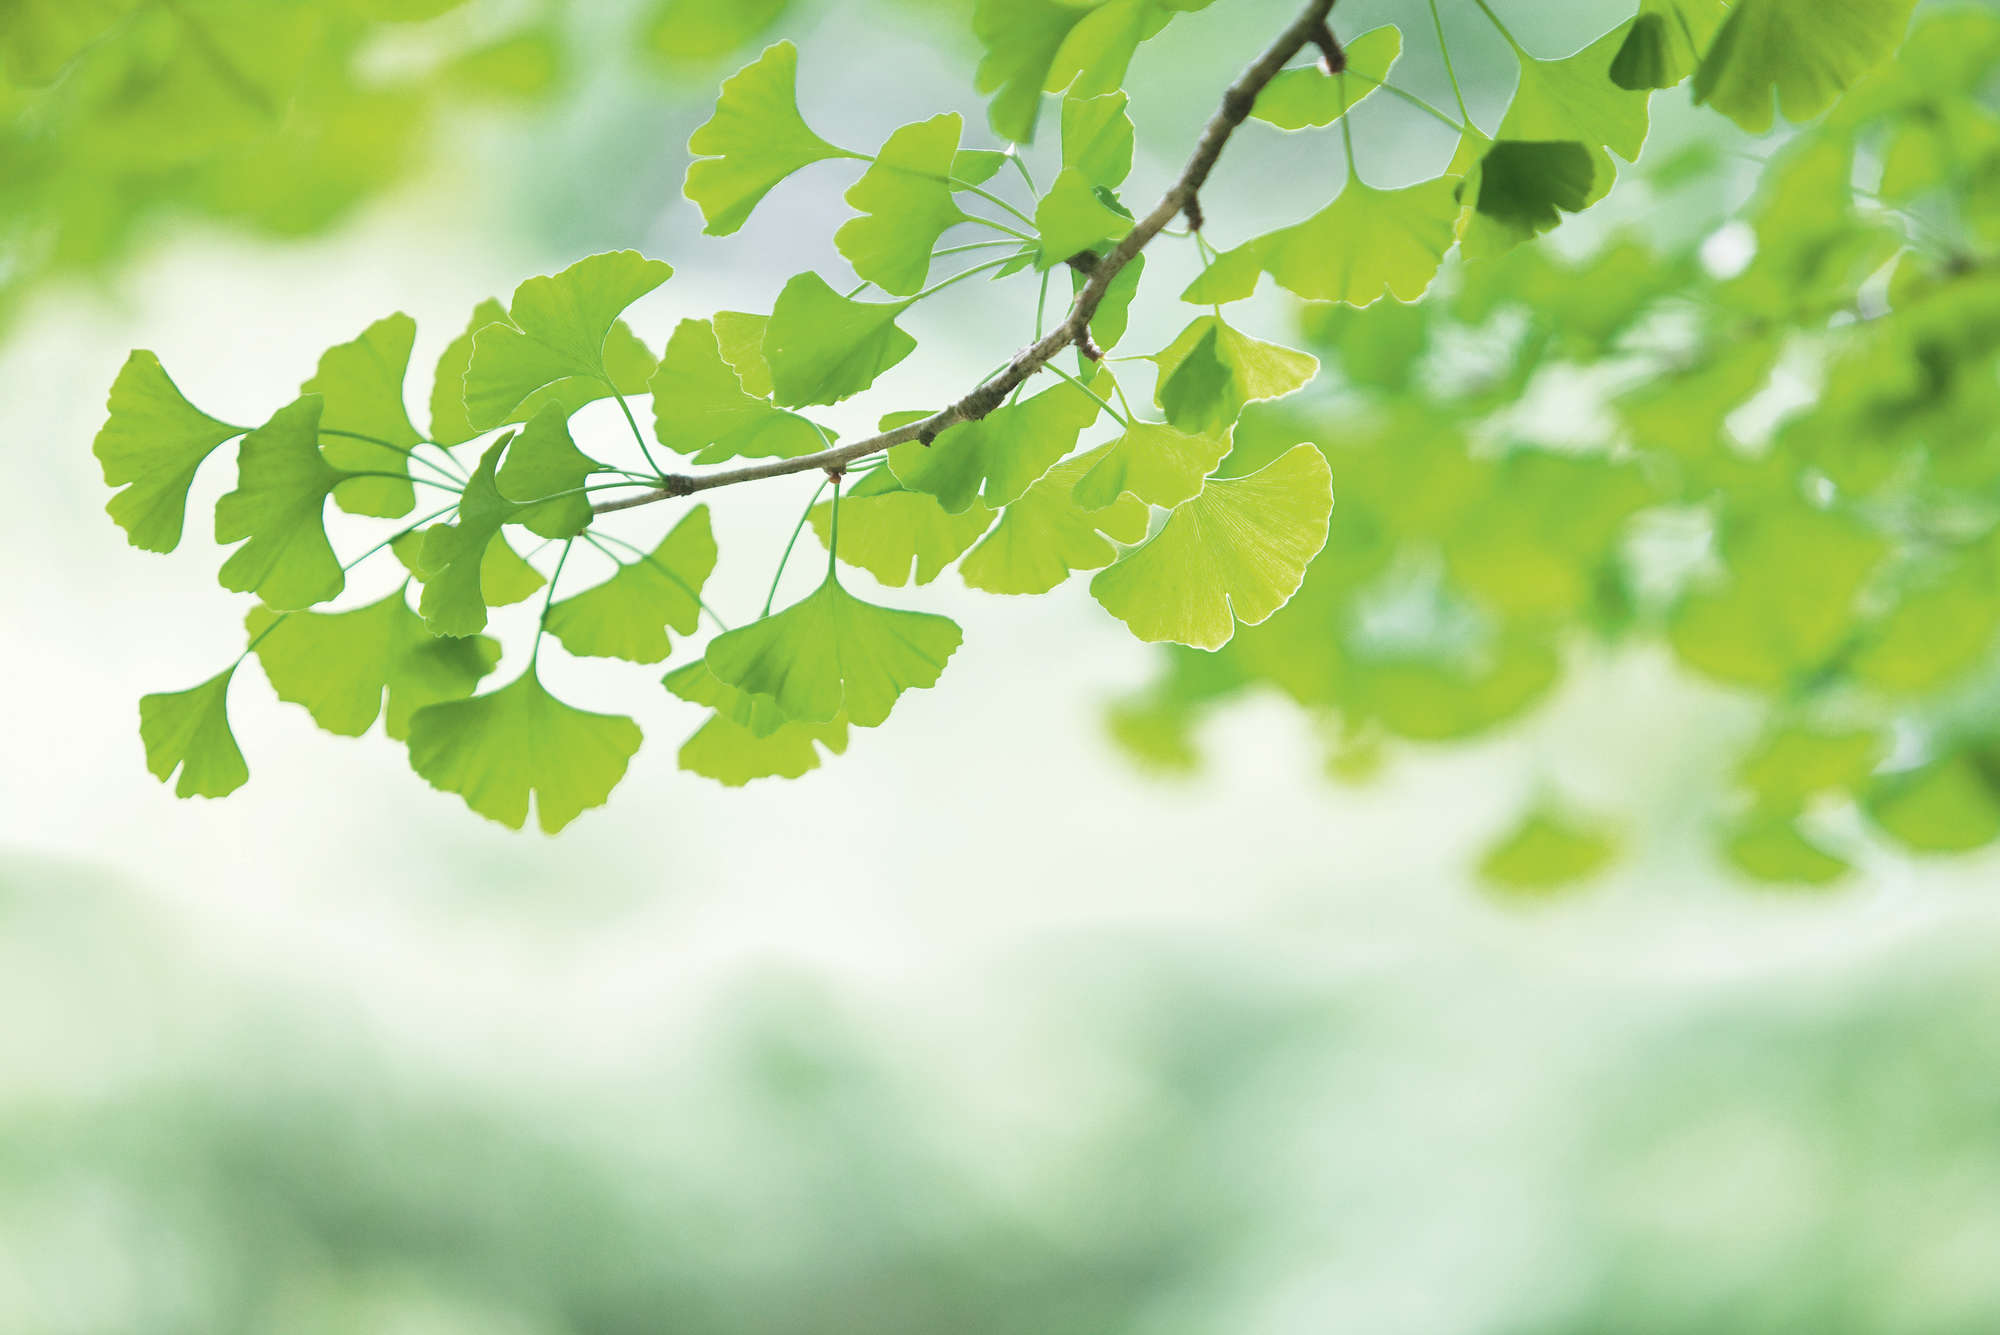             Ginkgo – Fototapete Blätterzweig Frühlingsgrün
        